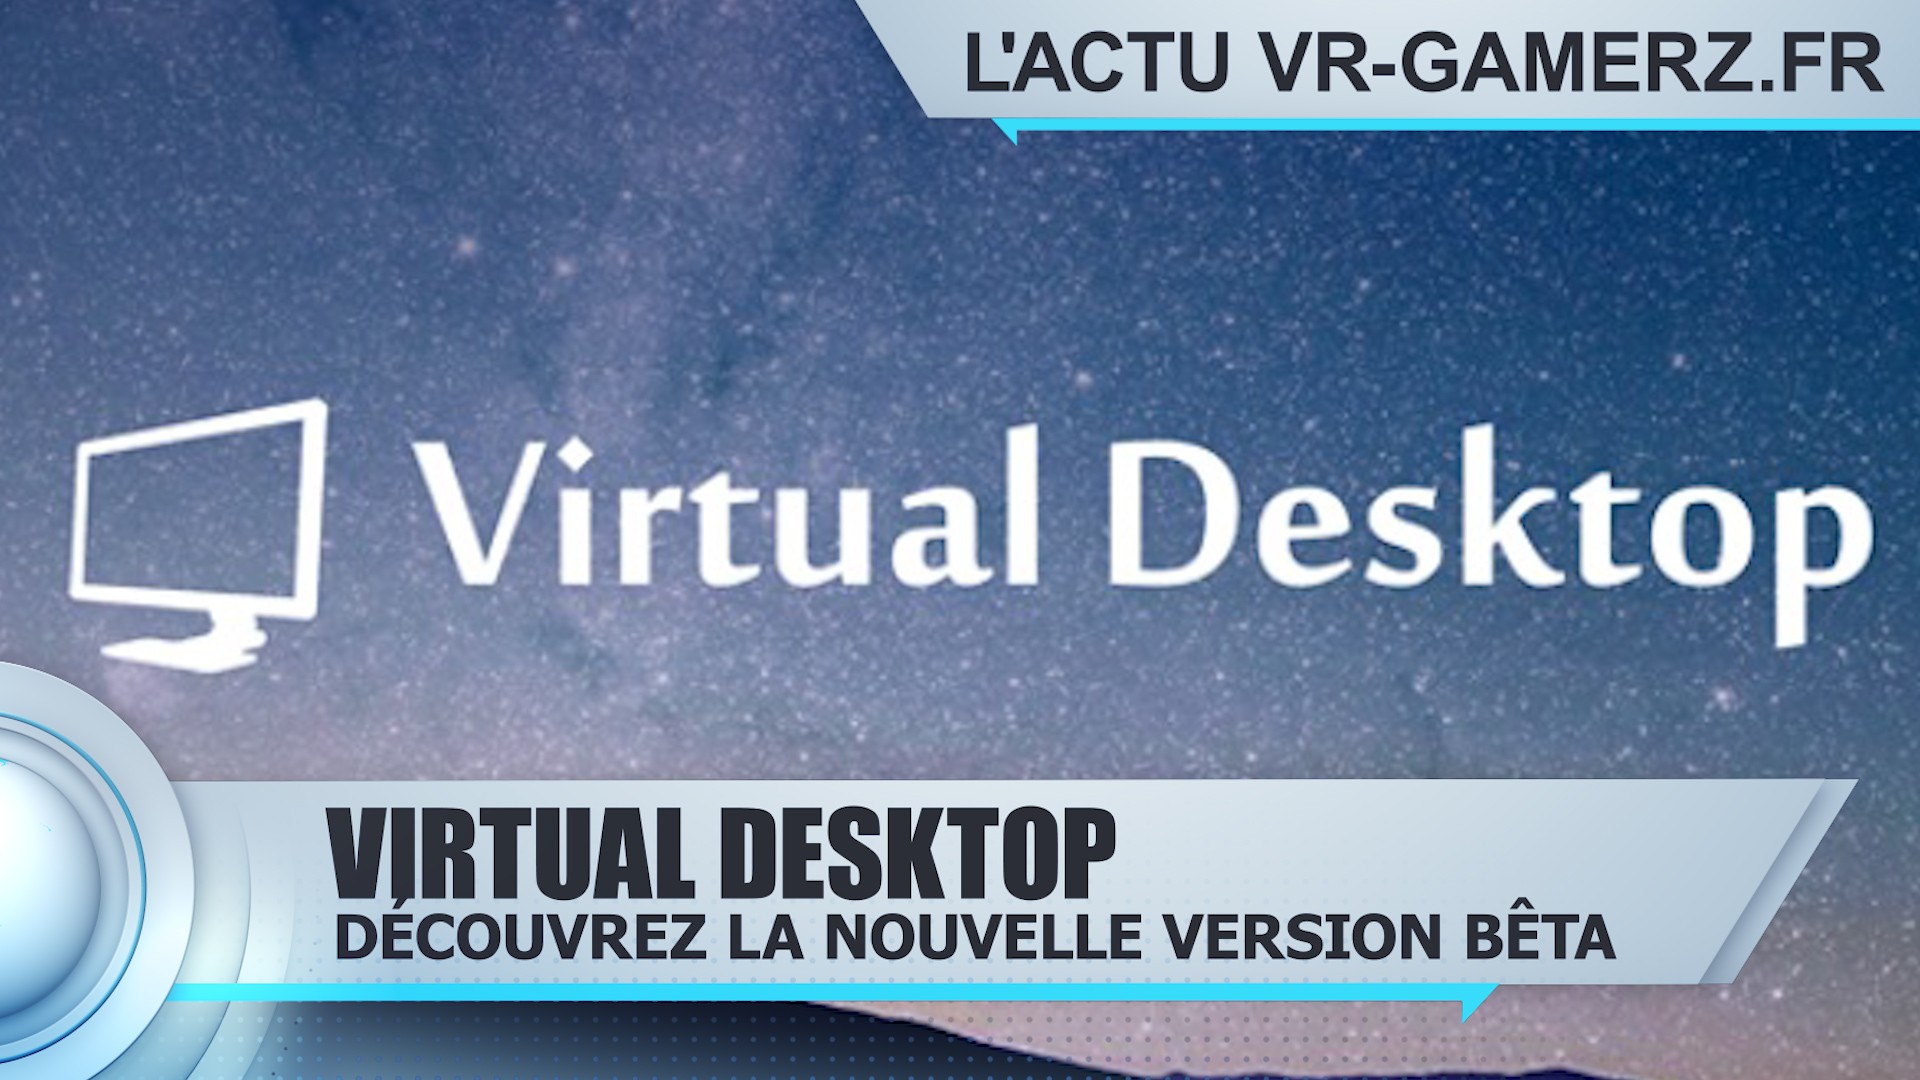 Virtual desktop Oculus quest peut maintenant s’utiliser sans être connecté à internet.